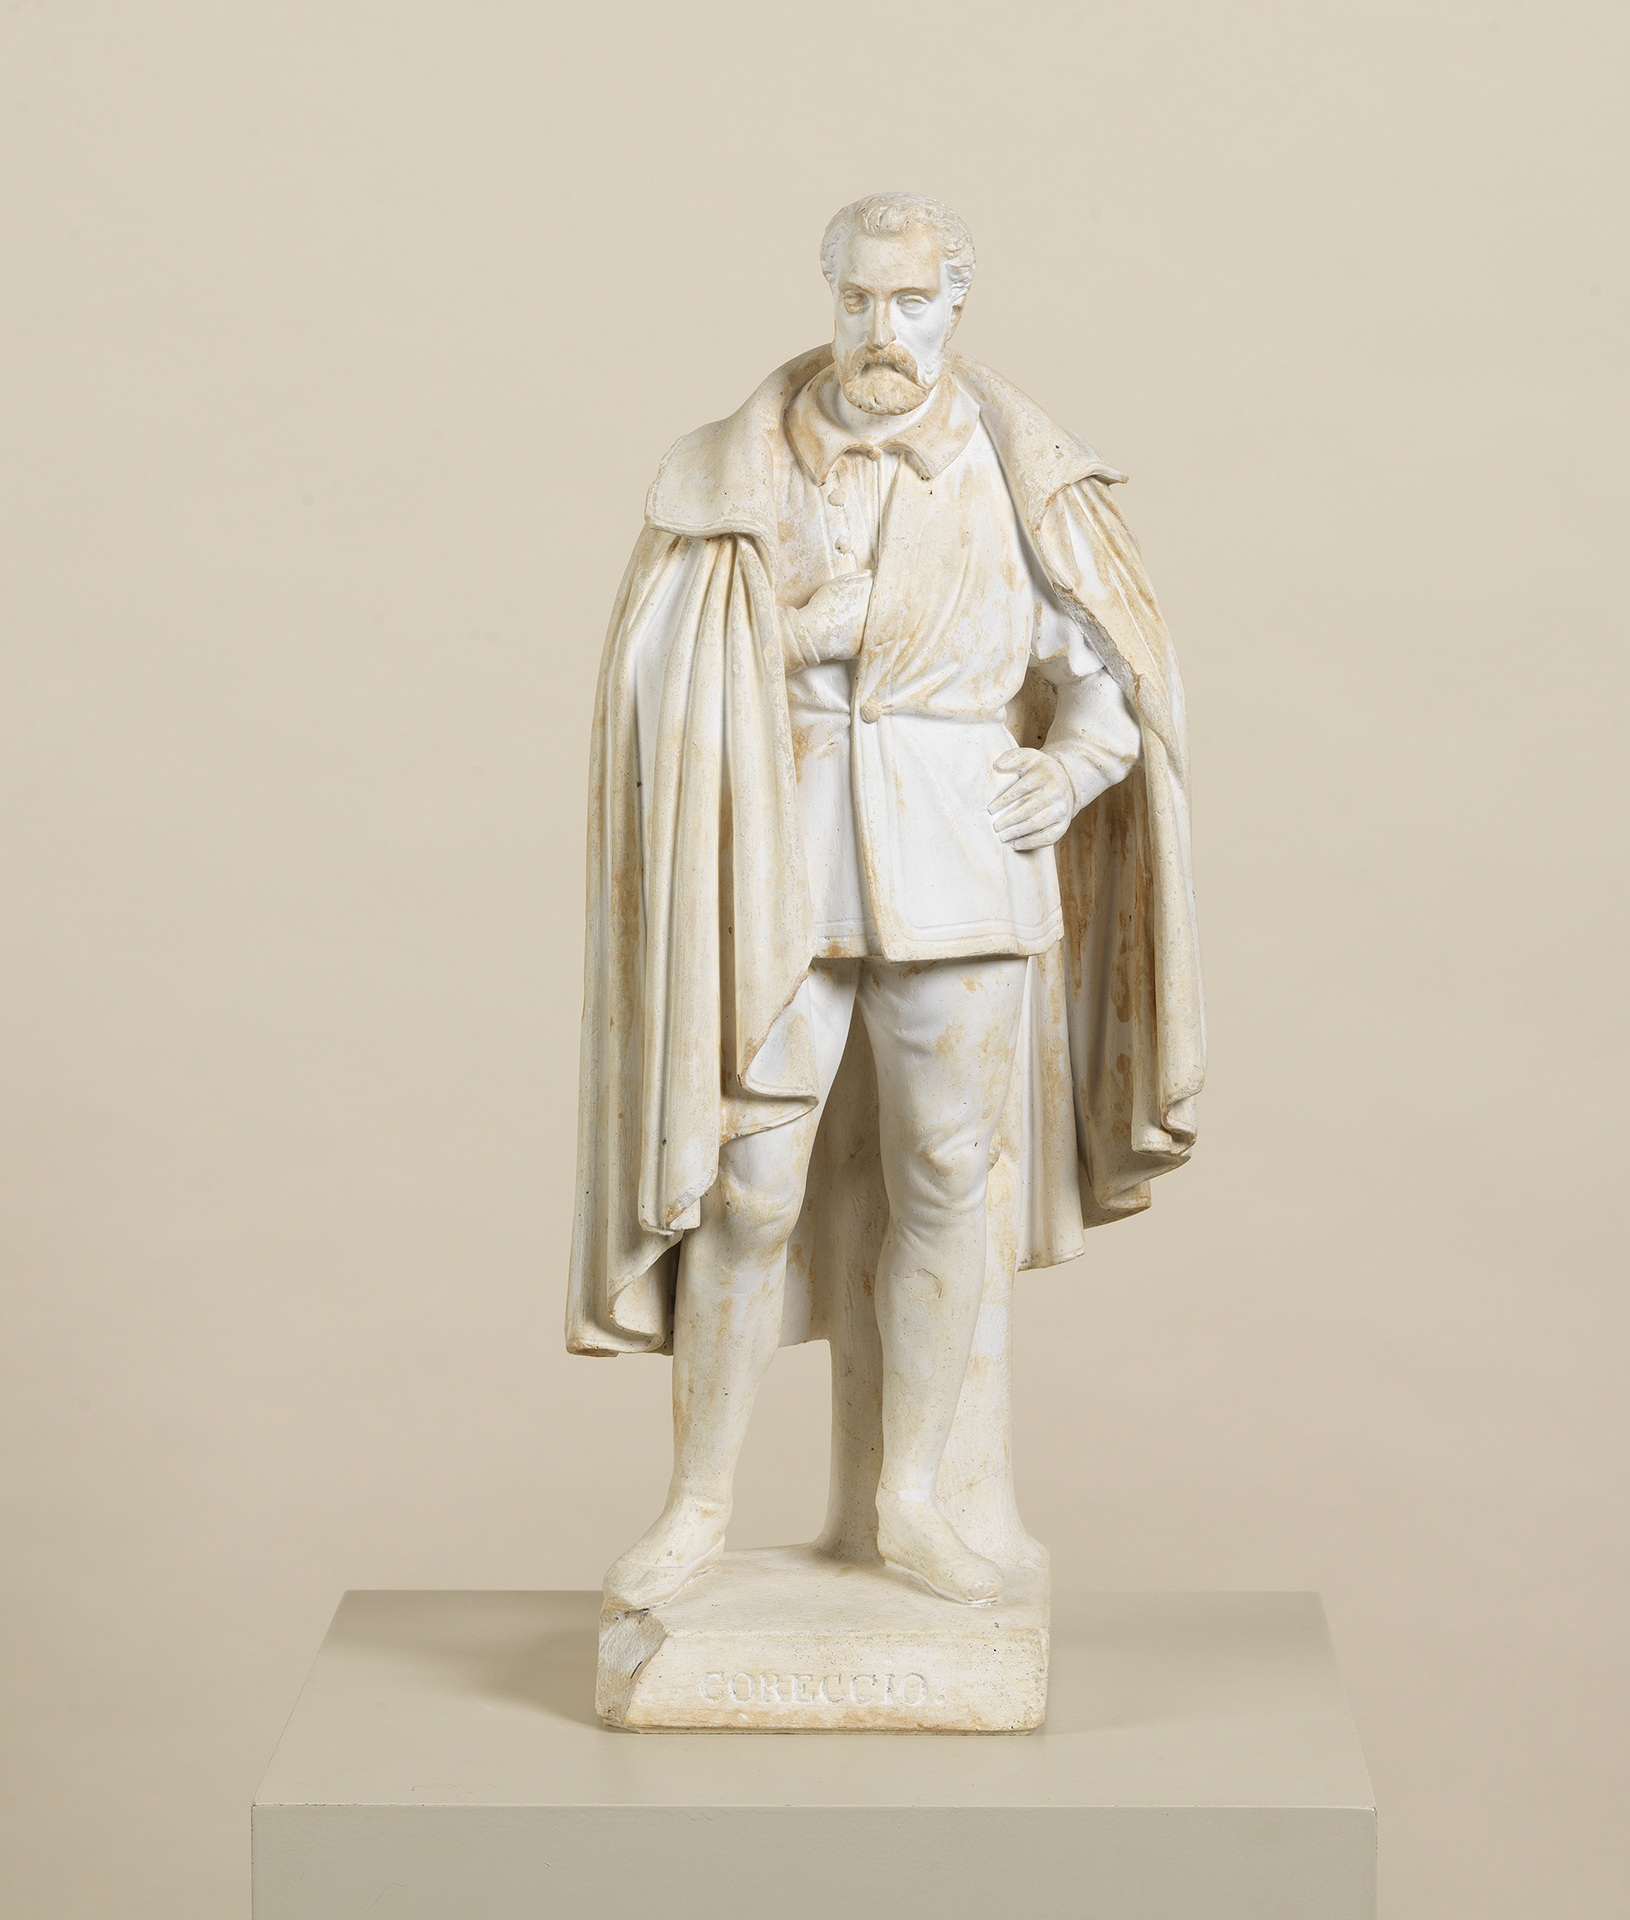 Die Skulptur des Bildhauers Ludwig Schwanthaler zeigt den Künstler Correggio. Er trägt einen Mantel und hat einen Bart. Die Skulptur ist aus weißen Gips der teils braun verfärbt ist.